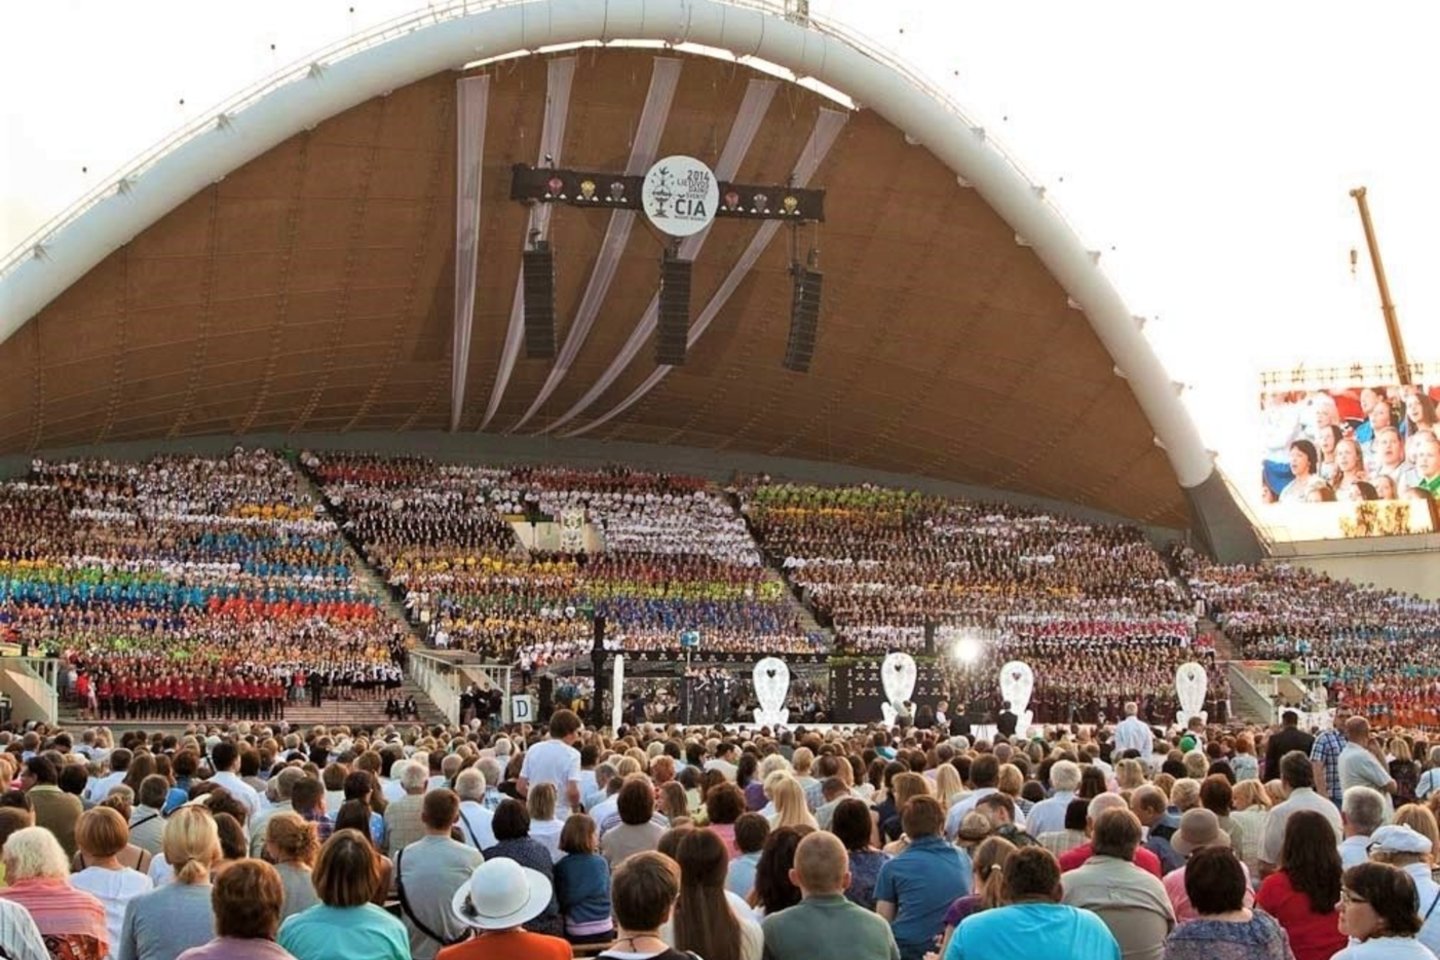  Dainų šventės Dainų diena „Vienybė težydi“ į vieną milžinišką chorą Vingio parke sukvies per 12 tūkstančių dainininkų <br> Nuotr. iš LNKC archyvo